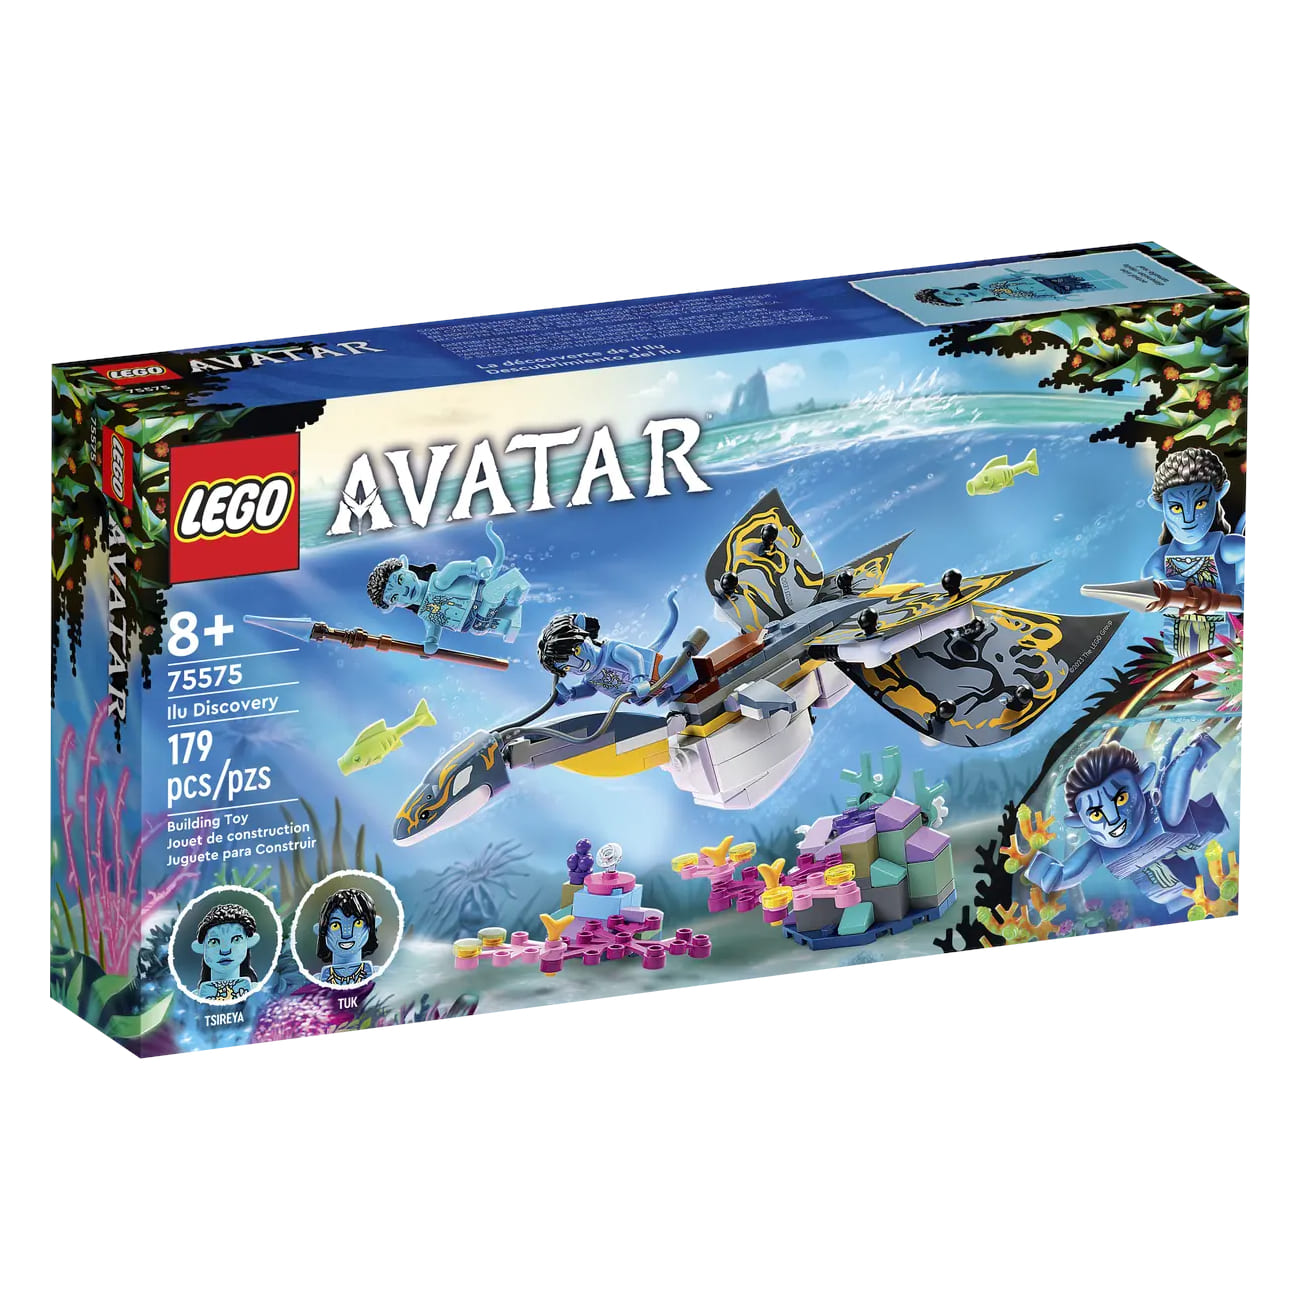 Конструктор LEGO Avatar Ilu Discovery 75575, 179 деталей конструктор lego avatar 75575 открытие илу